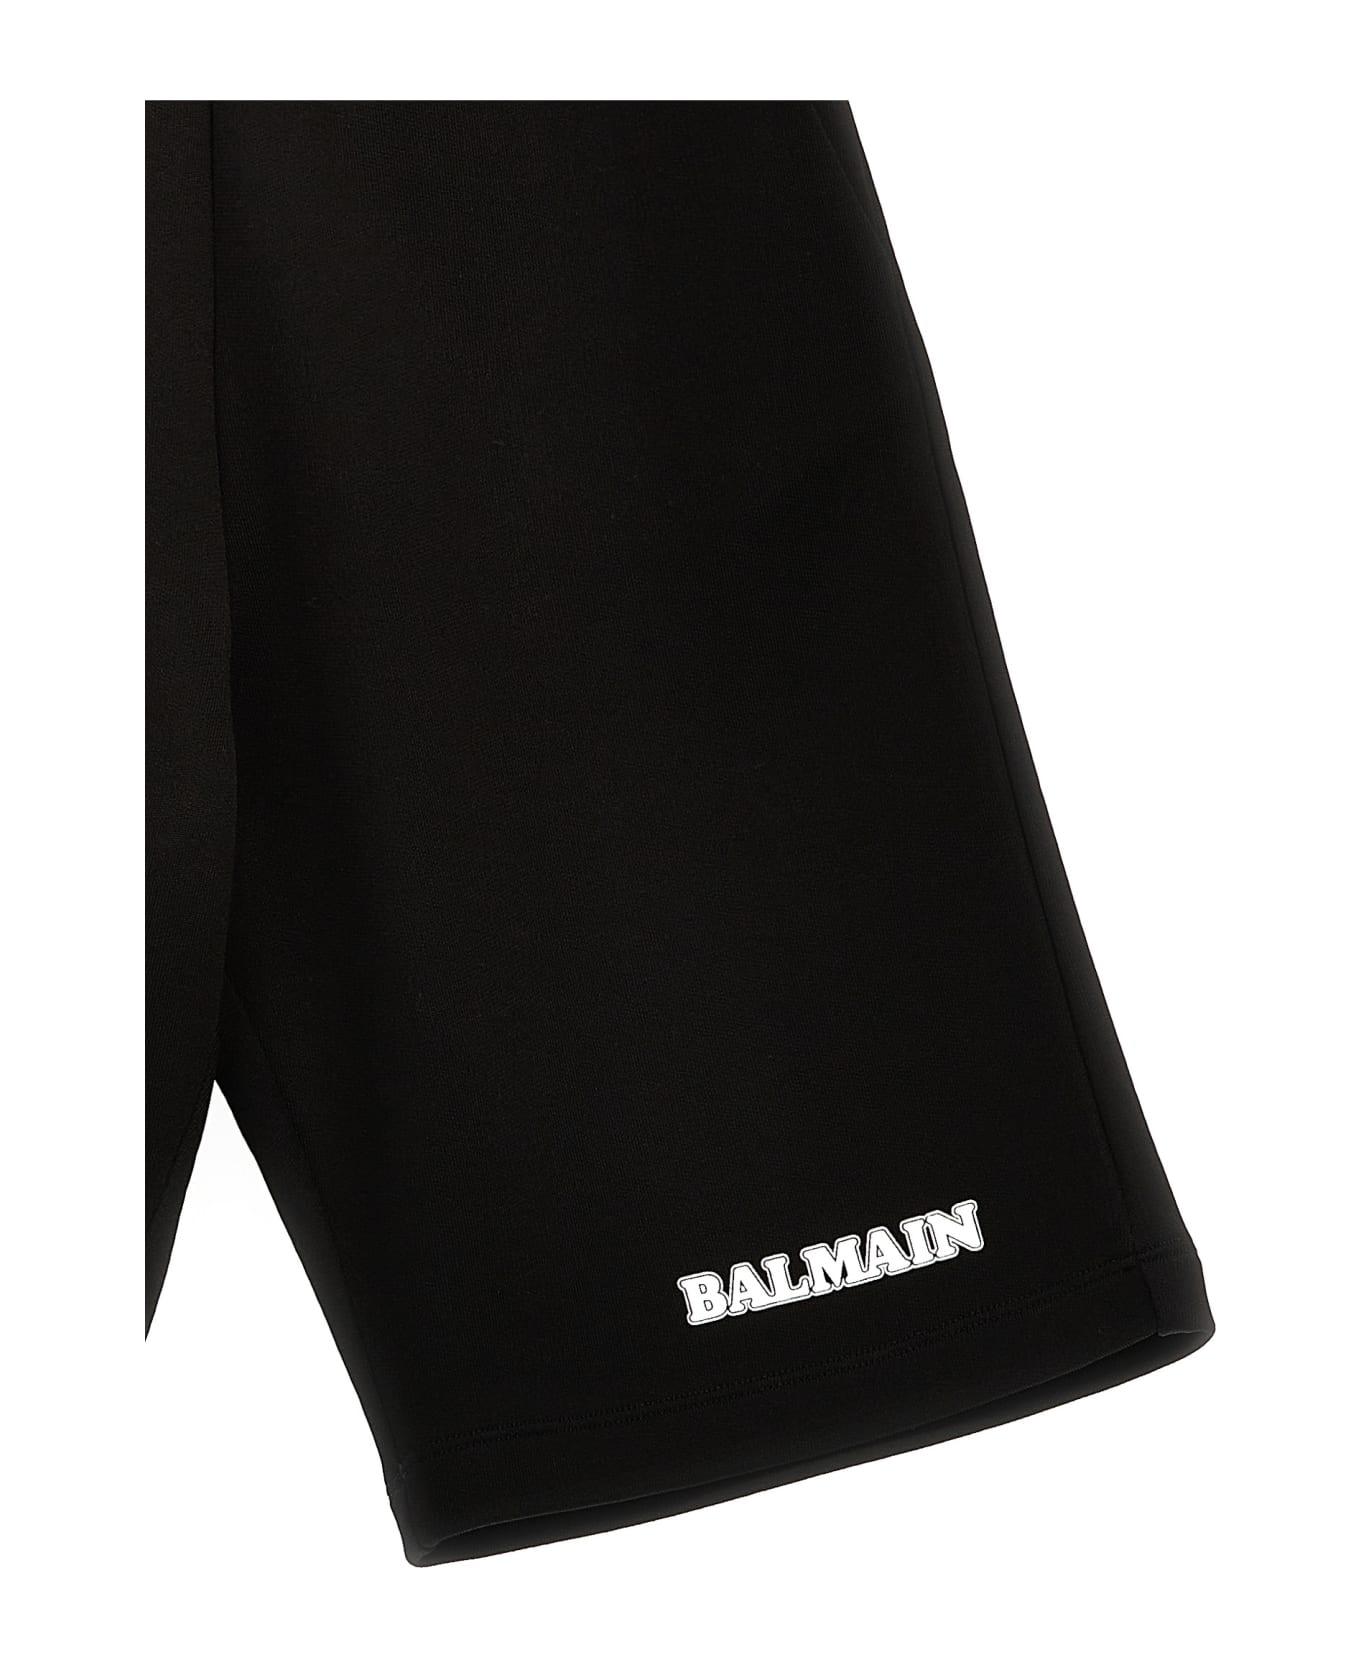 Balmain Logo Print Bermuda Shorts - Bc